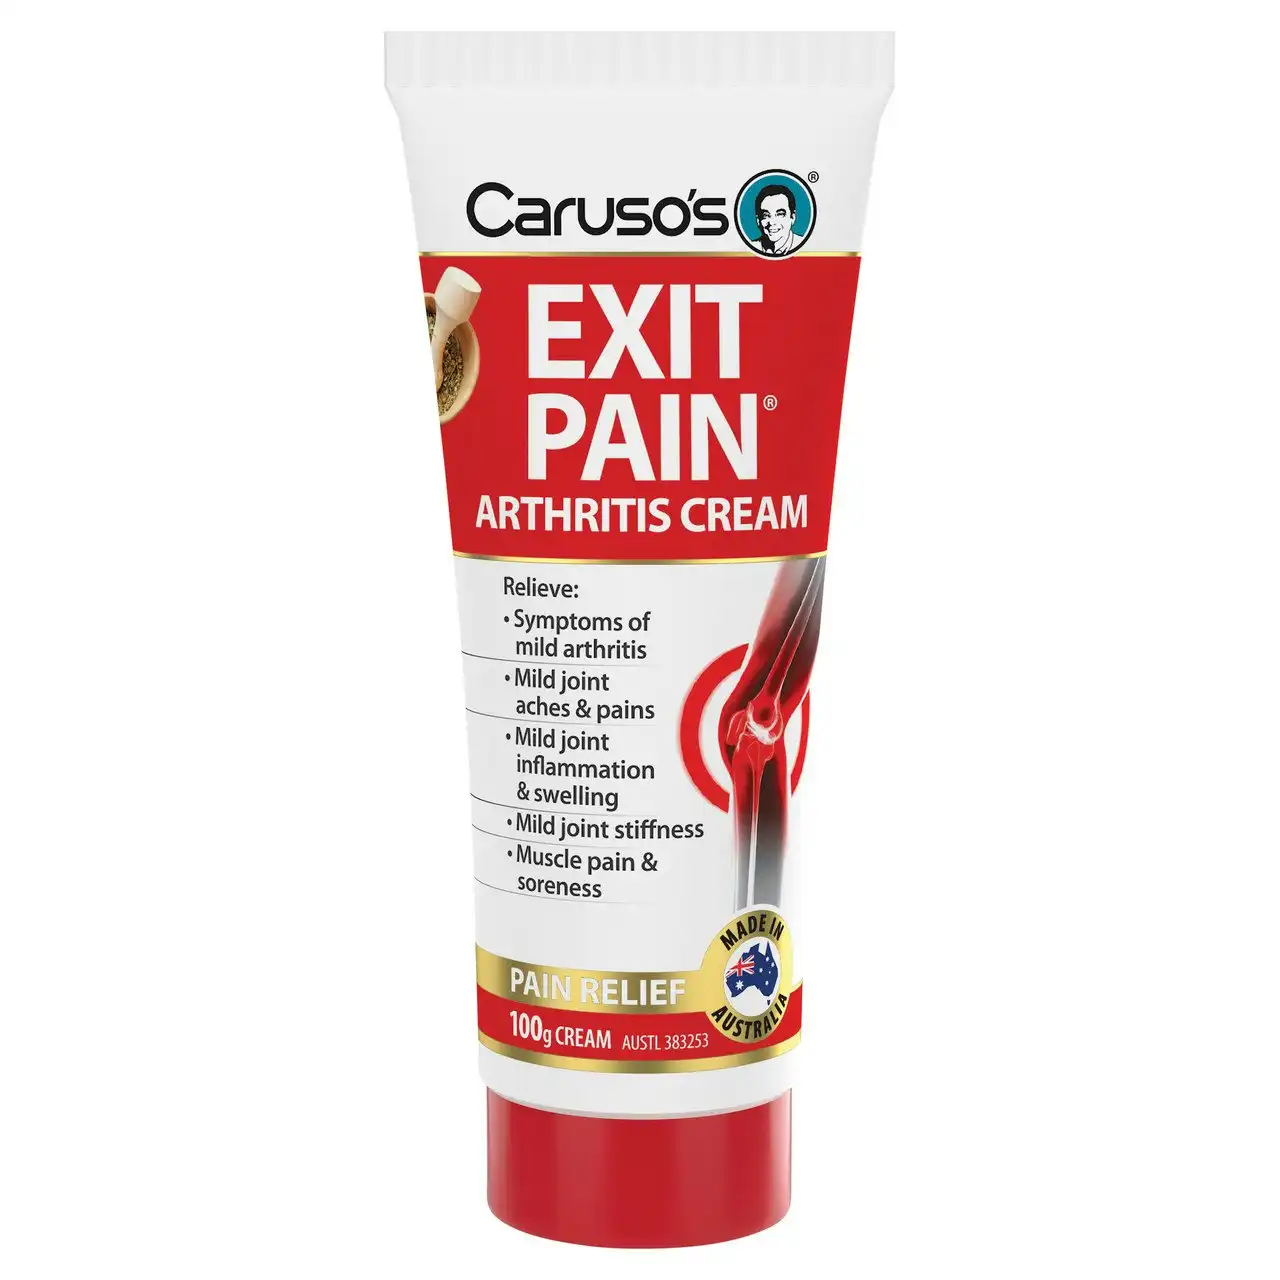 Caruso's Exit Pain Arthritis Cream